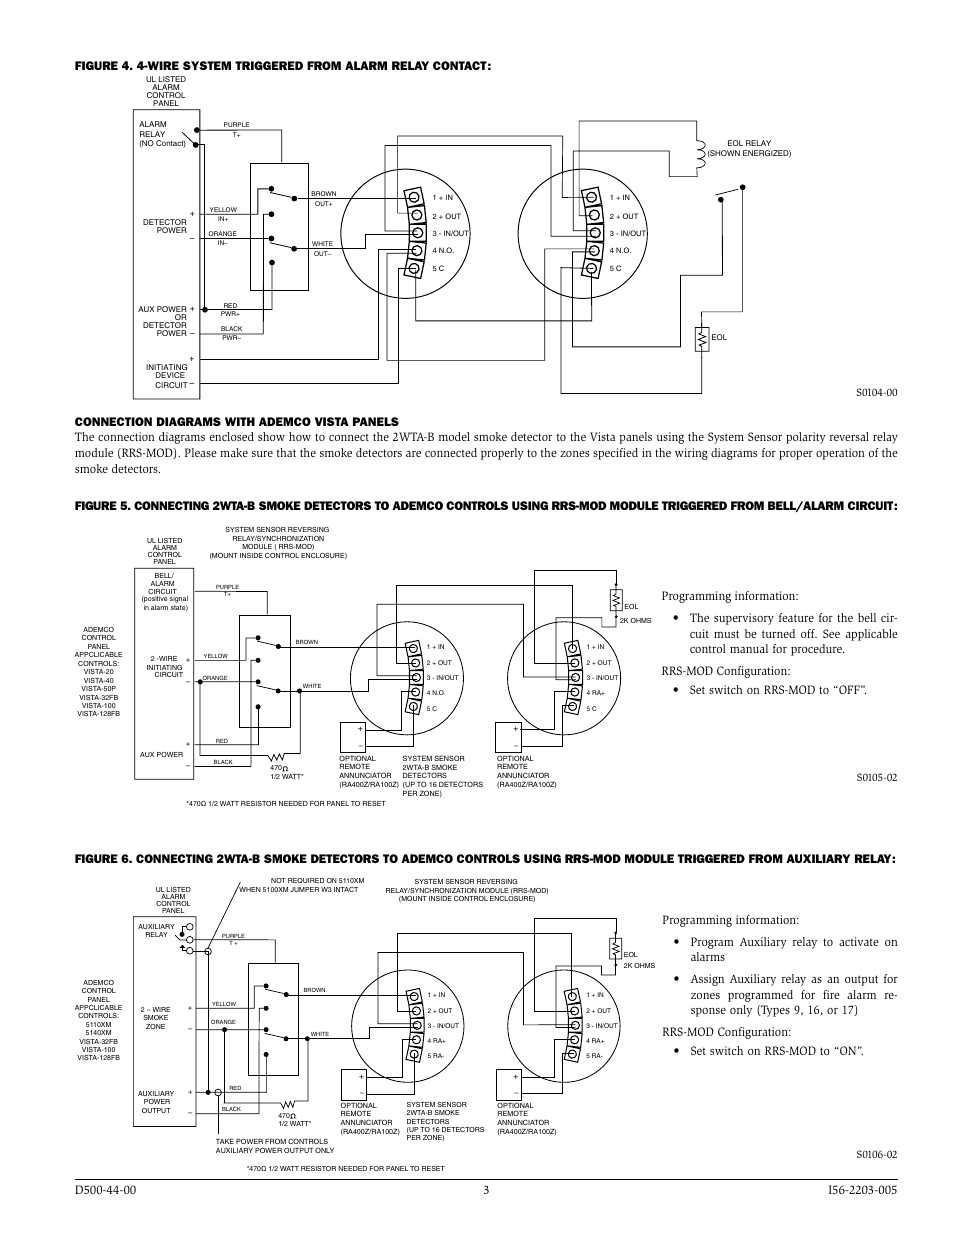 ipdatatel wiring diagram